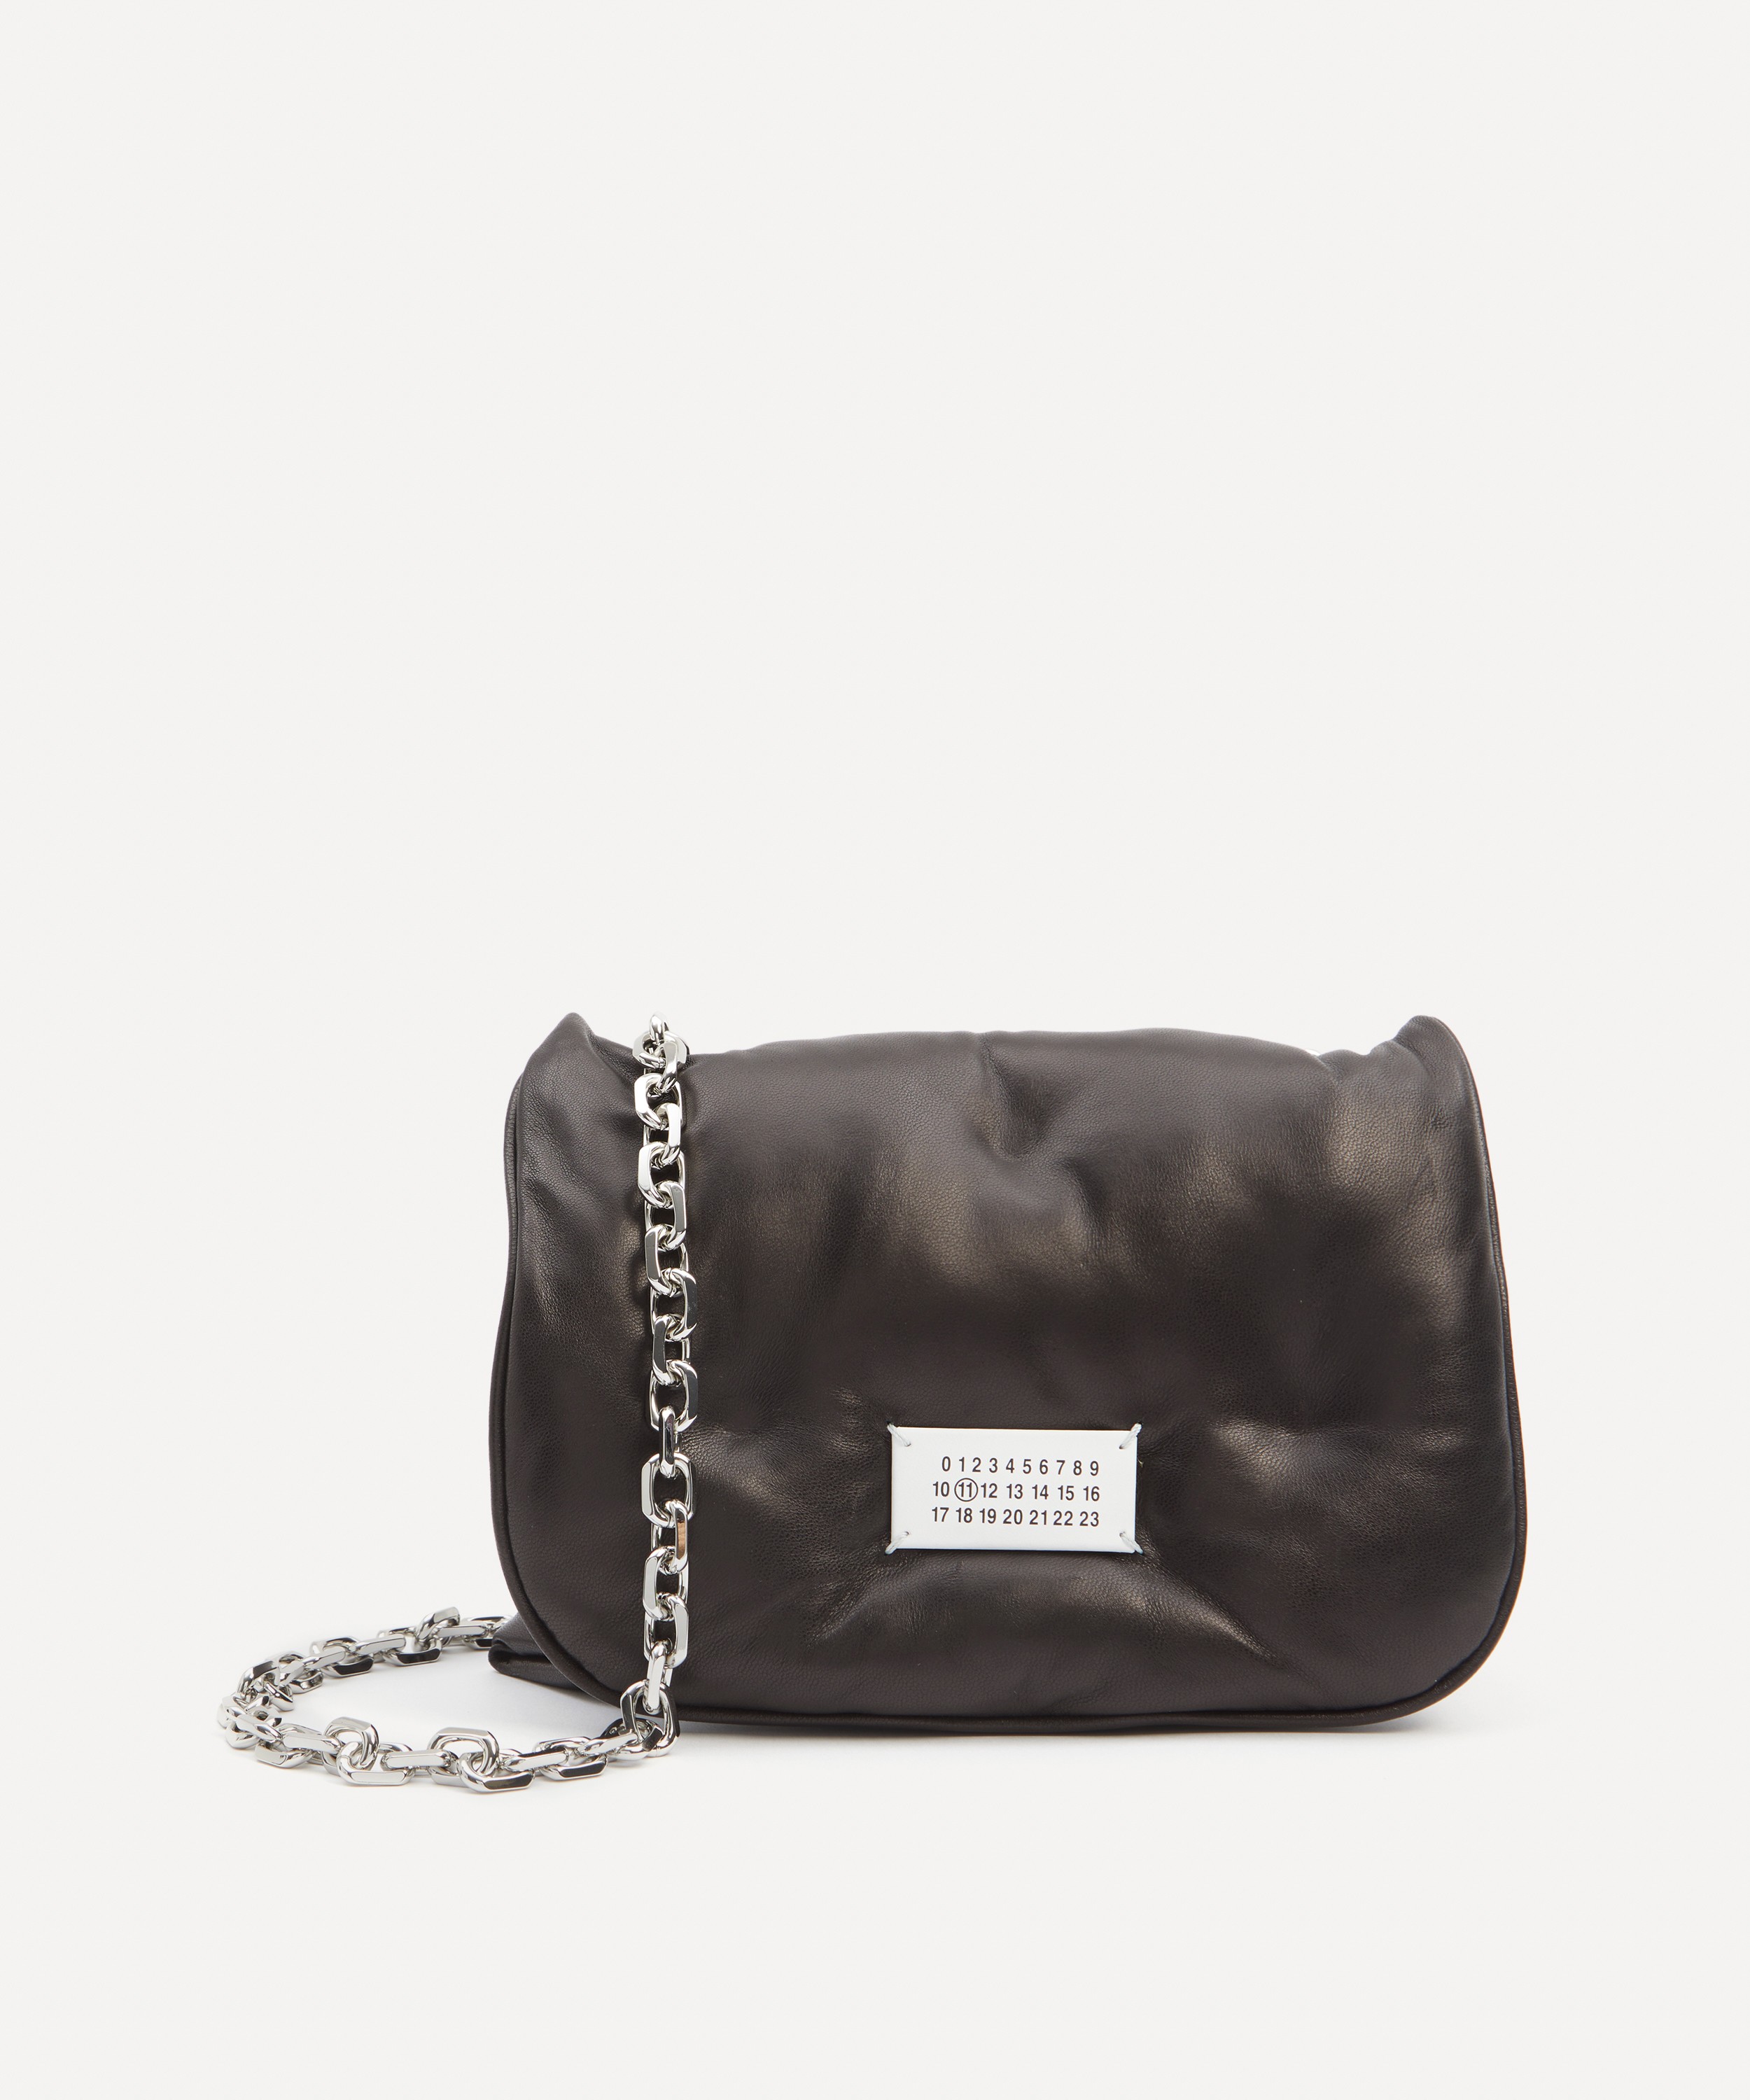 Prada Monochrome Chain Flap Bag